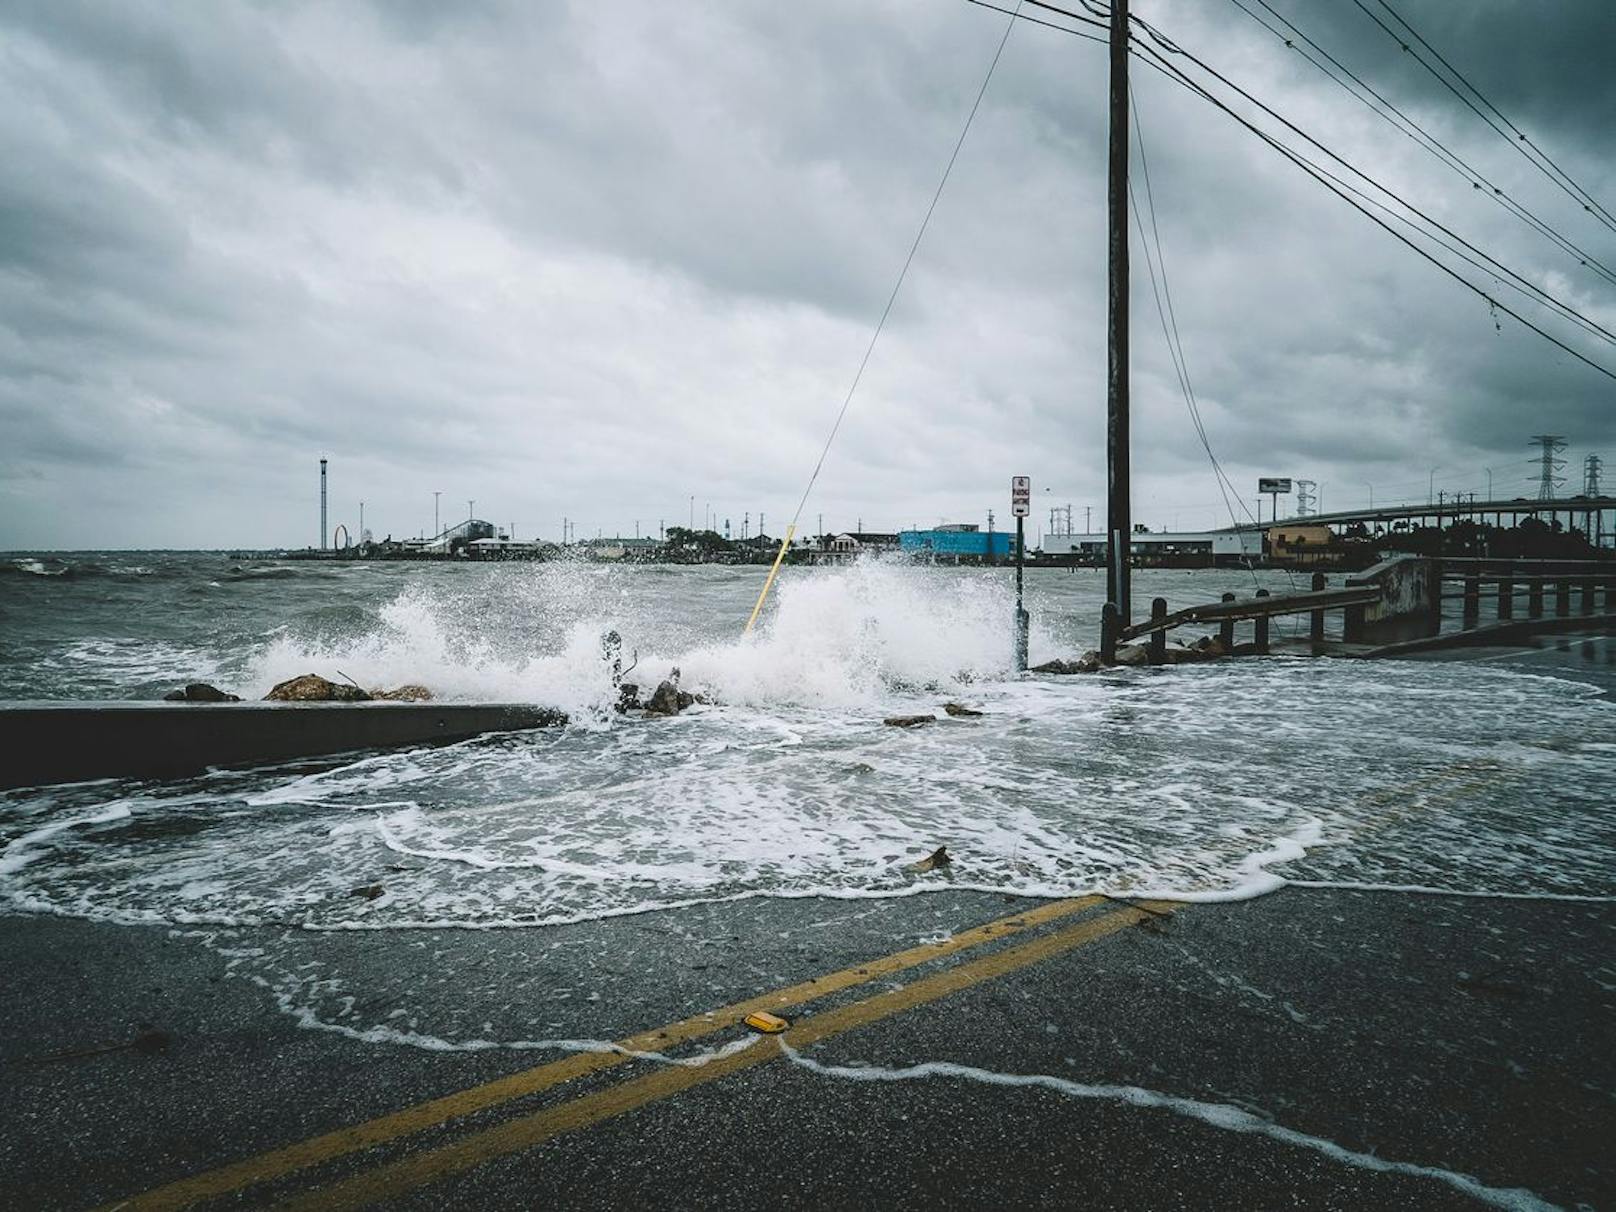 Hurrikan Harvey hinterließ&nbsp;in Kemah (Texas, USA) eine Spur der Verwüstung. Extremereignisse nehmen in Zeiten der Klimakrise weiter zu.